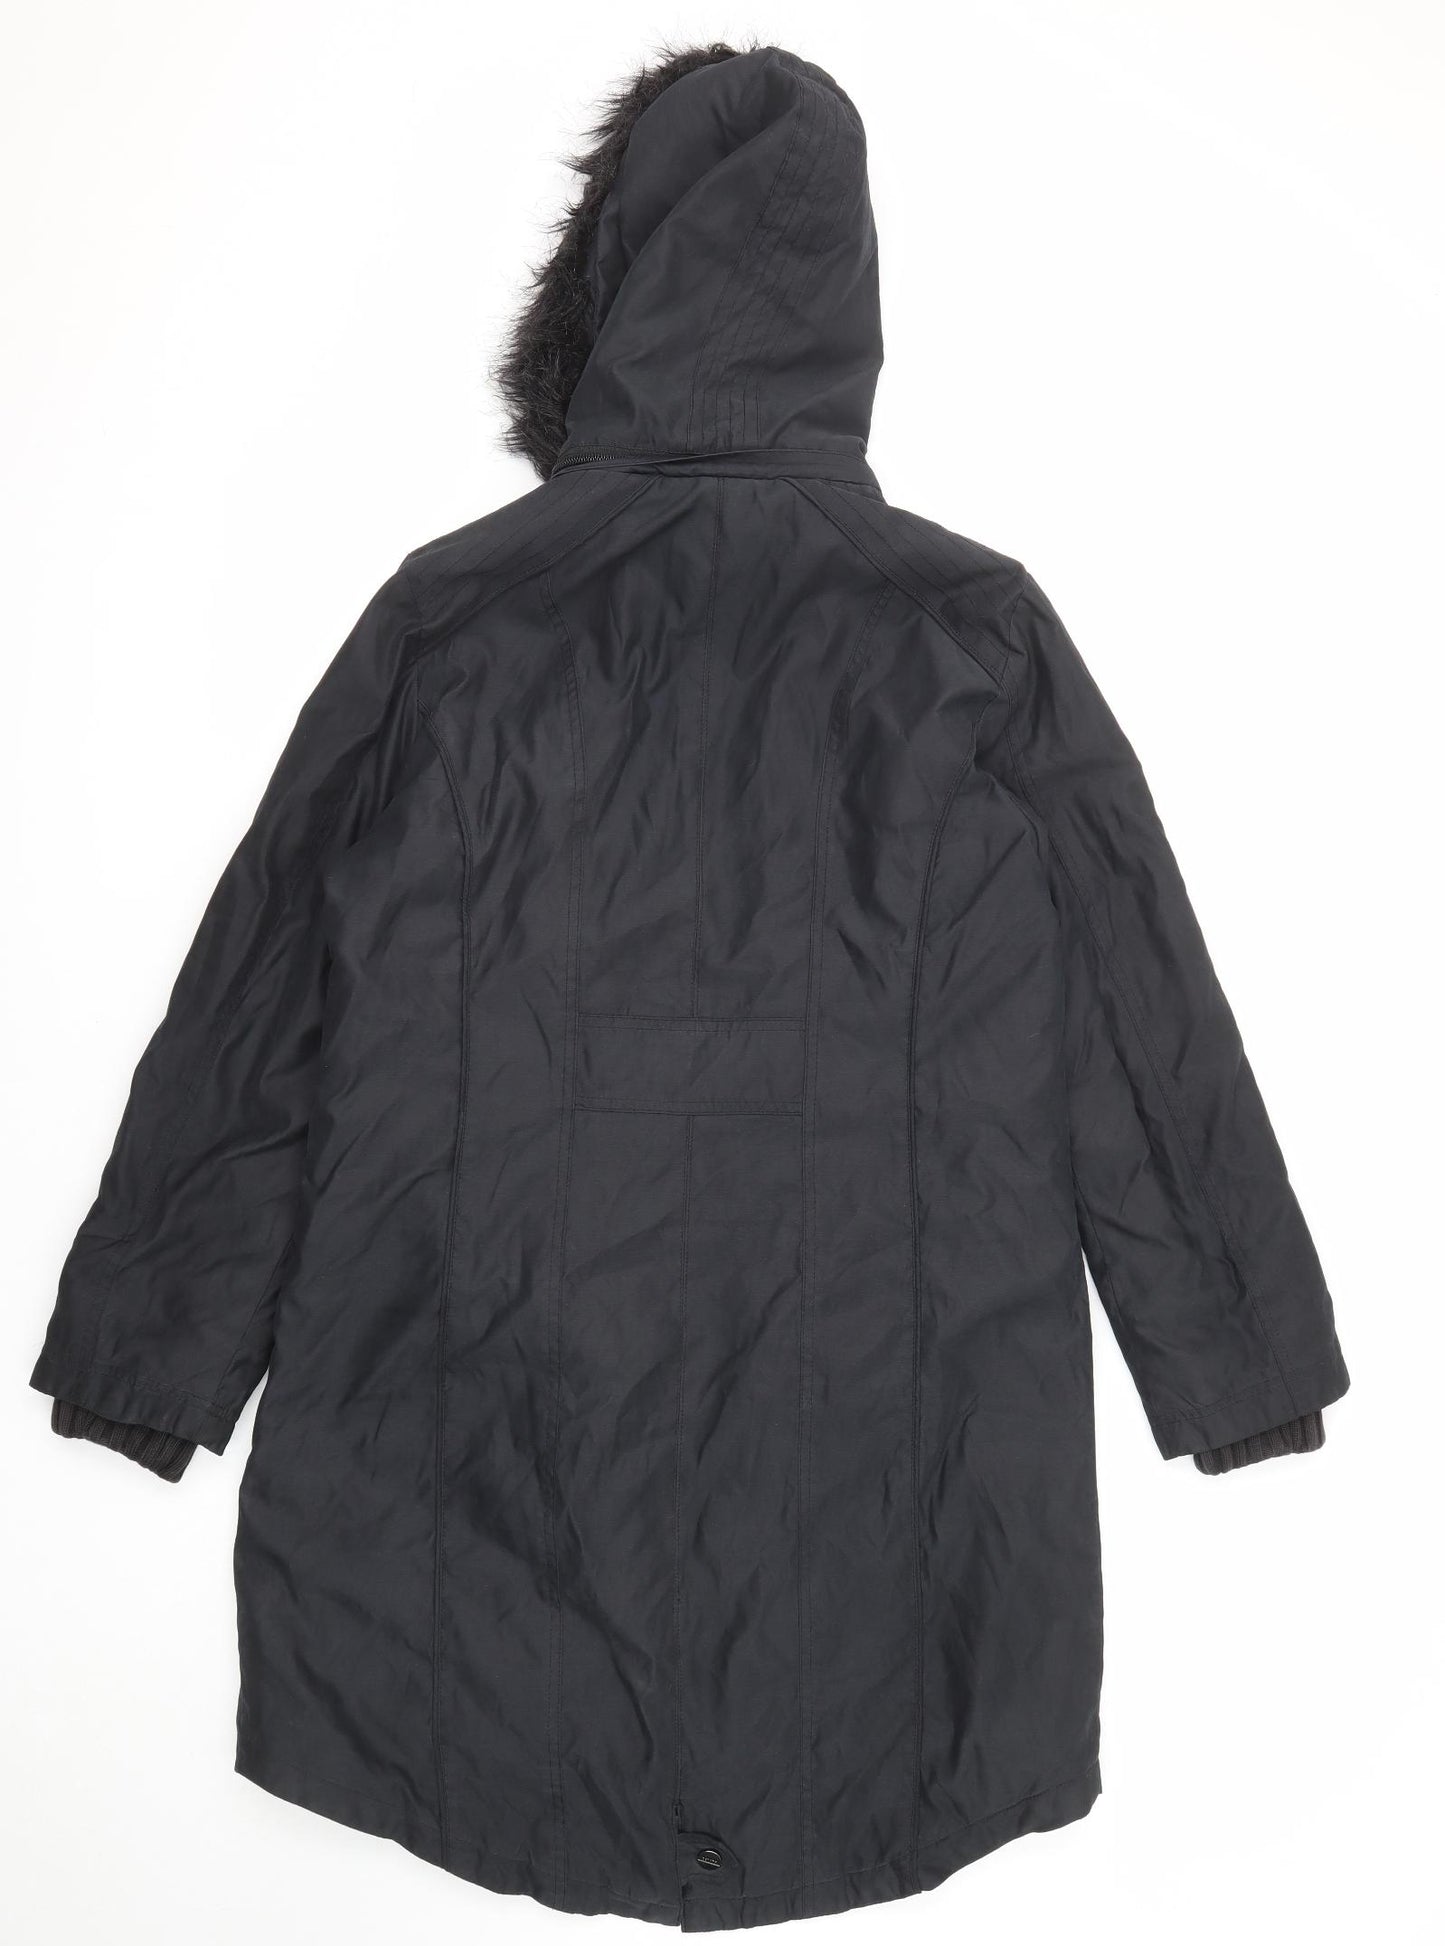 Per Una Womens Black Parka Coat Size M Zip